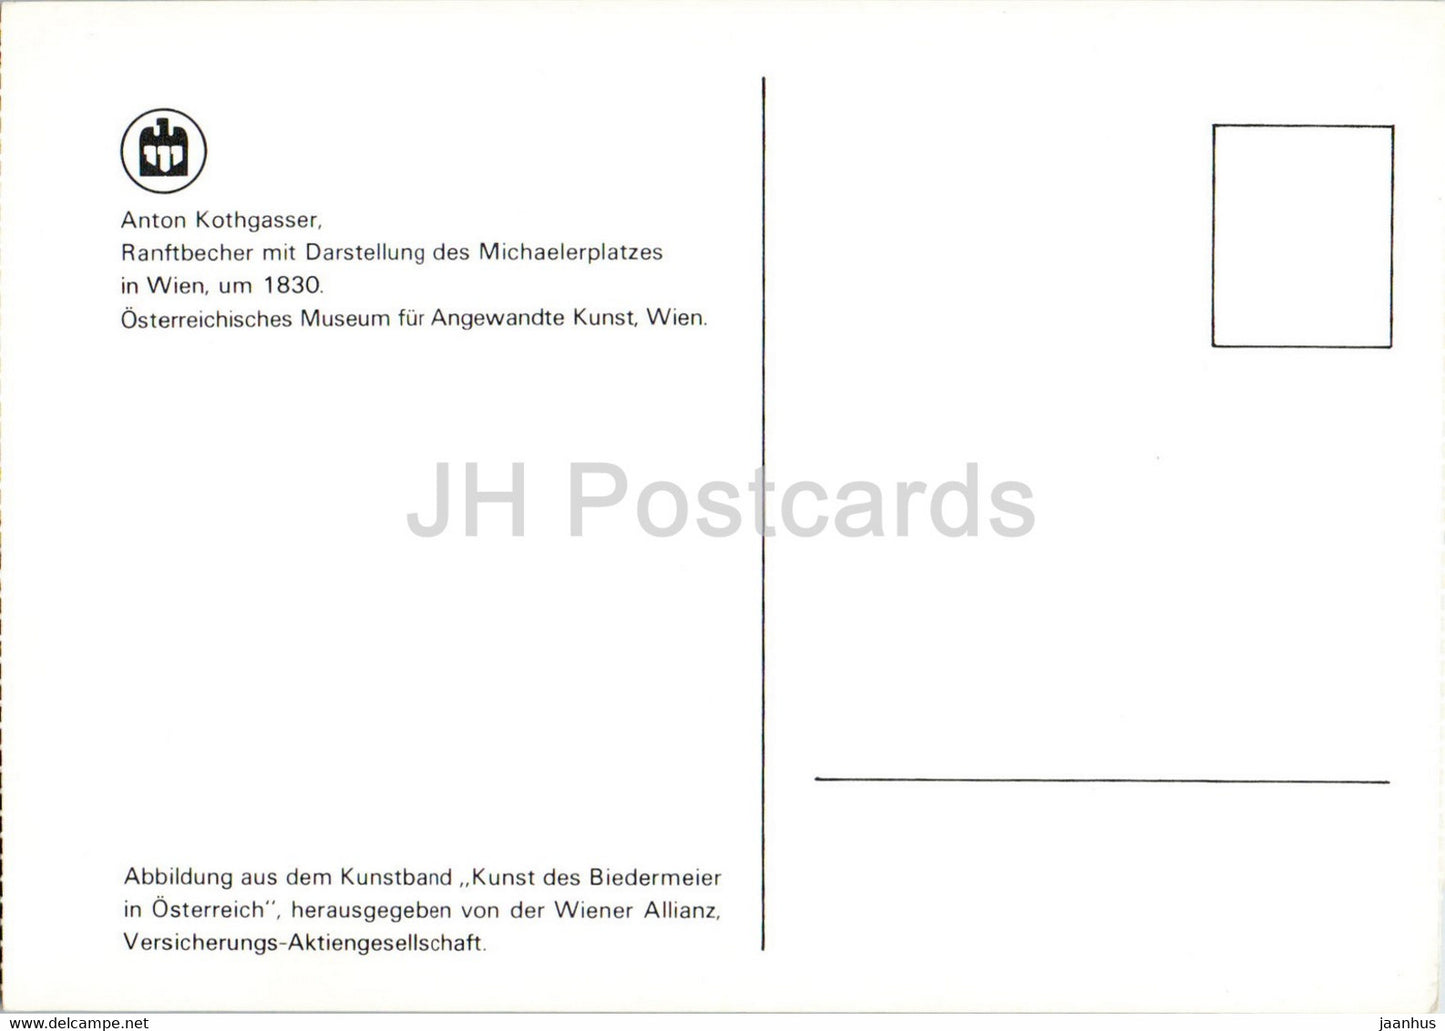 Anton Kothgasser - Ranftbecher mit Darstellung des Michaelerplatzes à Wien - cruche - Art autrichien - Autriche - inutilisé